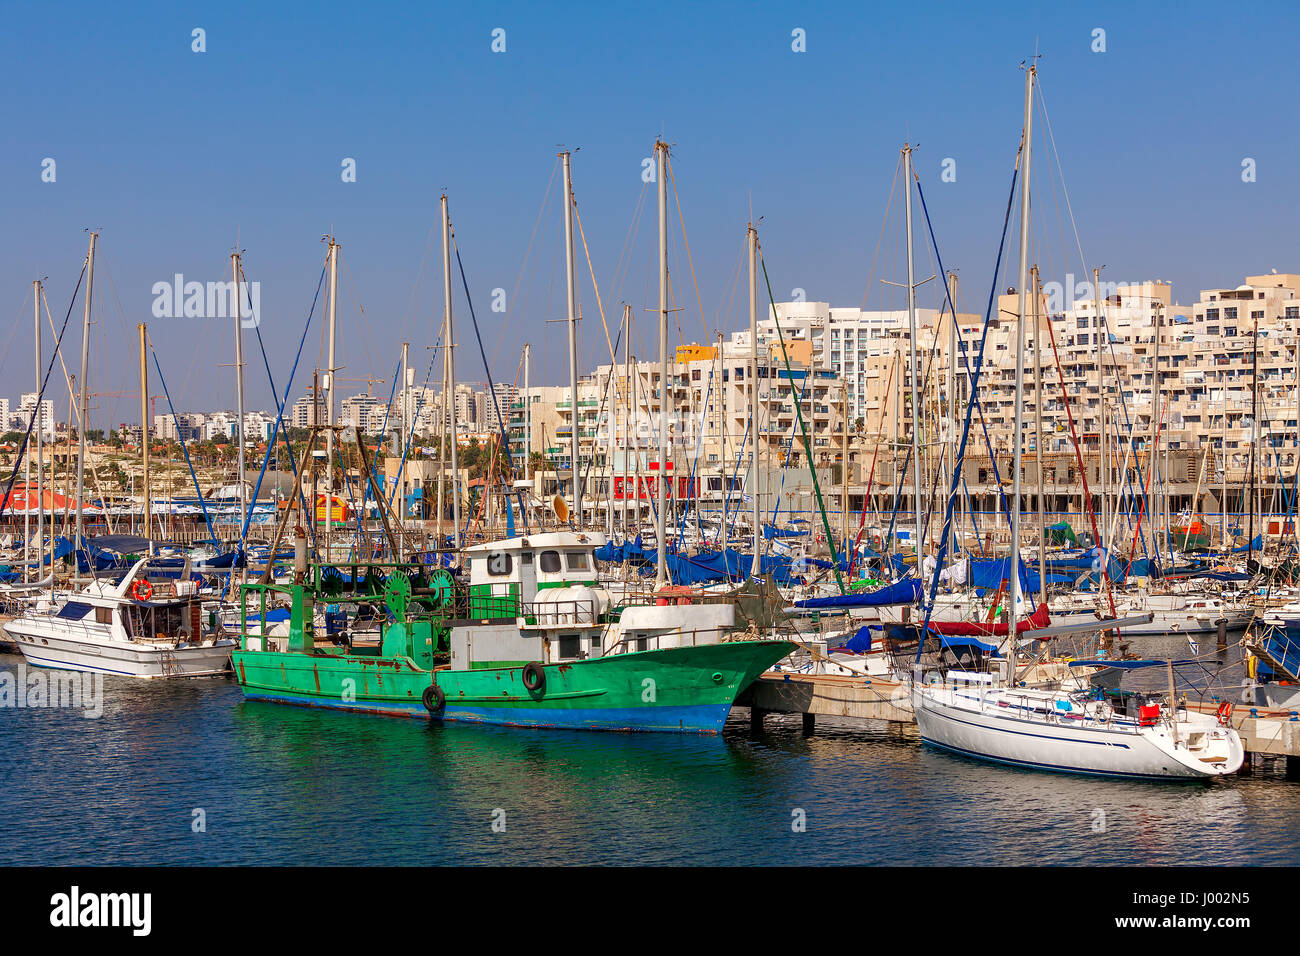 Yachts and boats anchored on marina in Ashkelon - coastal city on Mediterranean sea in Israel. Stock Photo